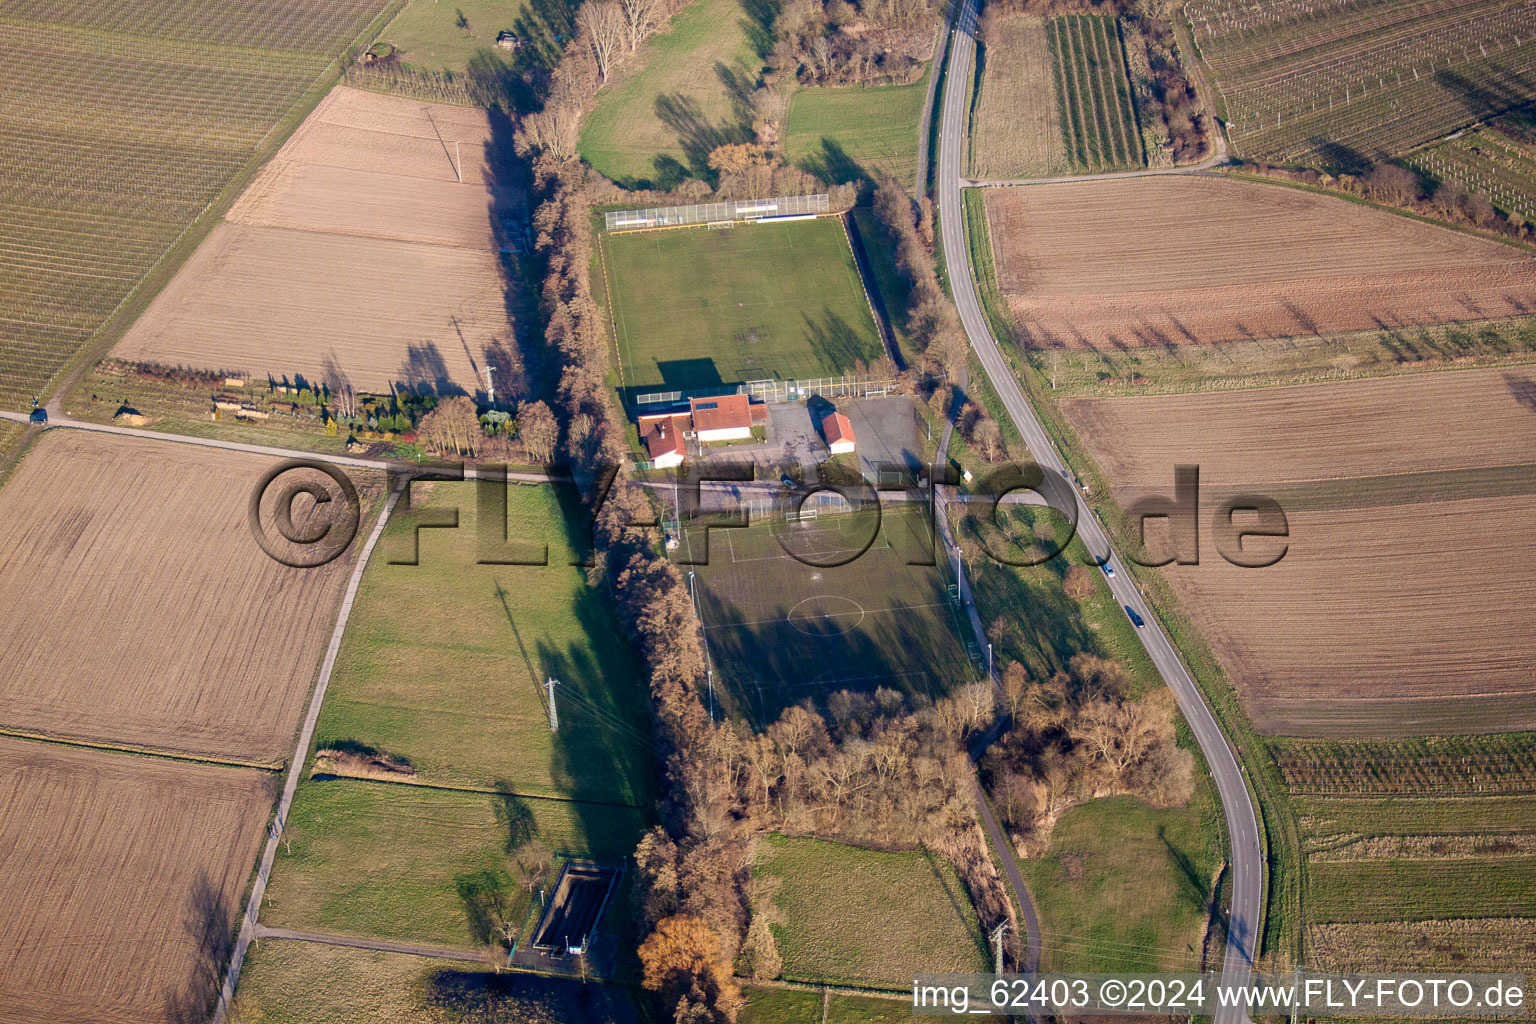 Vue aérienne de Terrains de sport au Klingbach à Klingenmünster dans le département Rhénanie-Palatinat, Allemagne